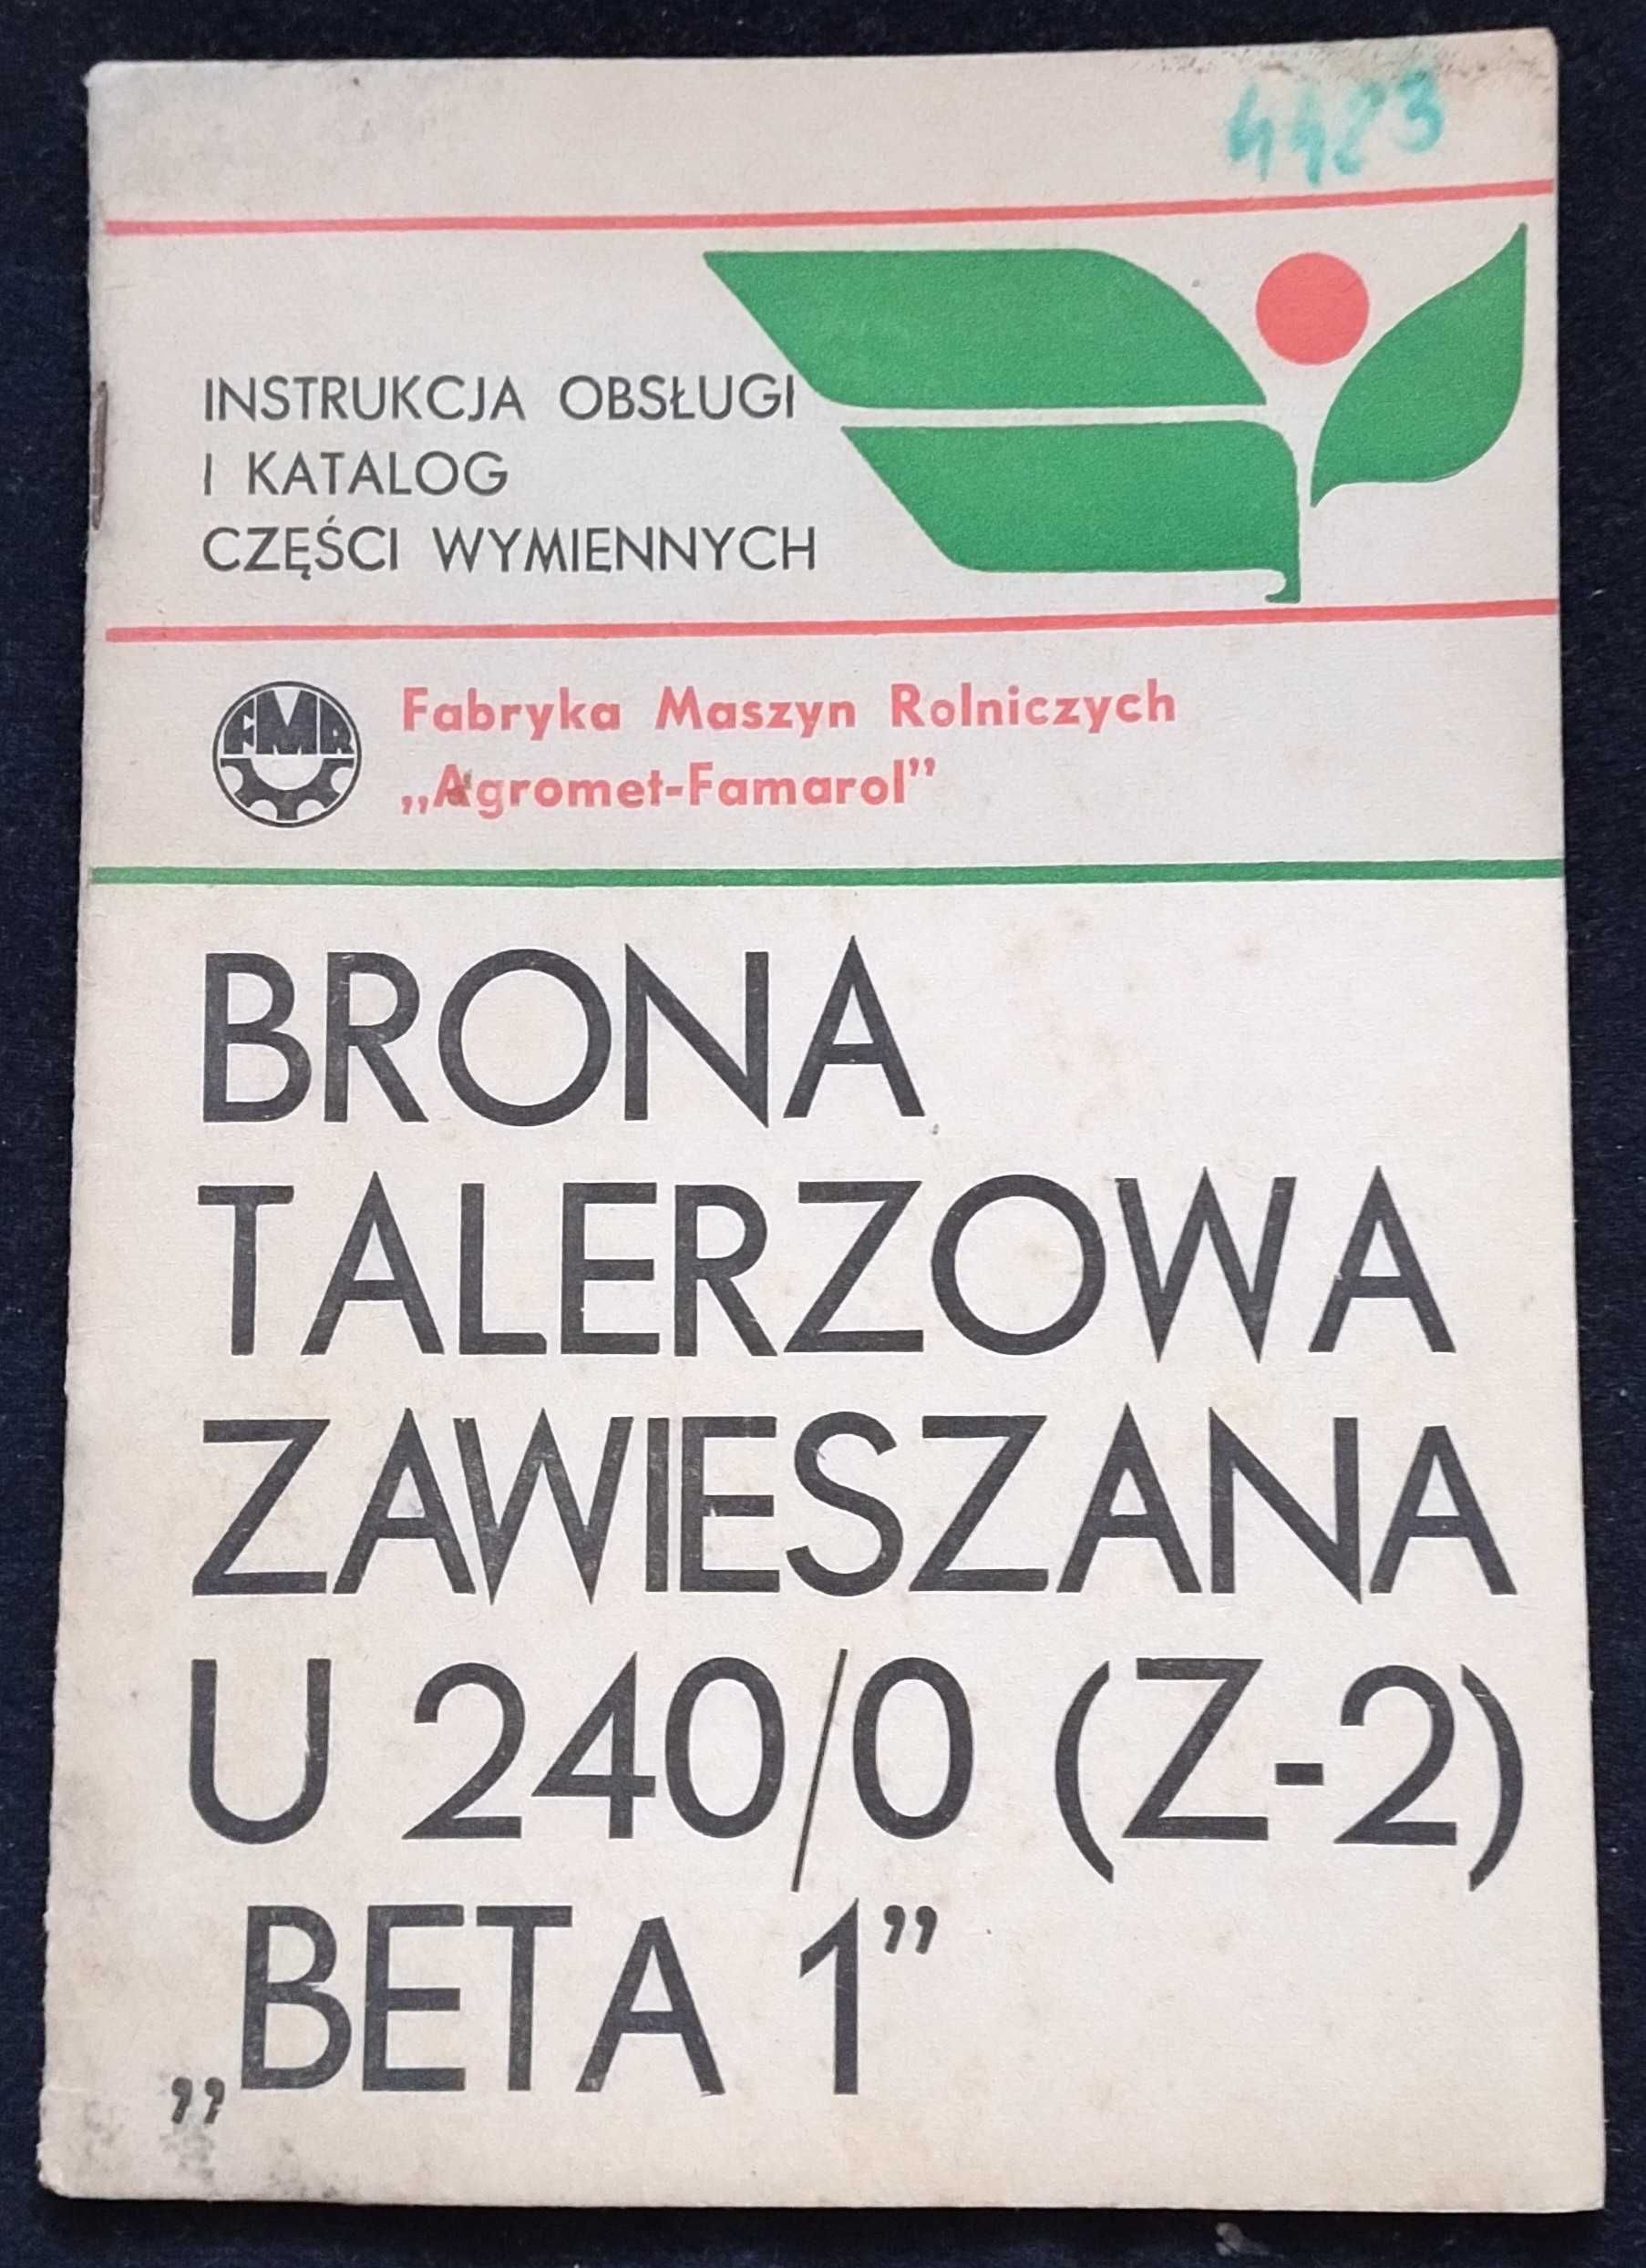 Brona talerzowa U240 Z2 Beta 1 instrukcja katalog części